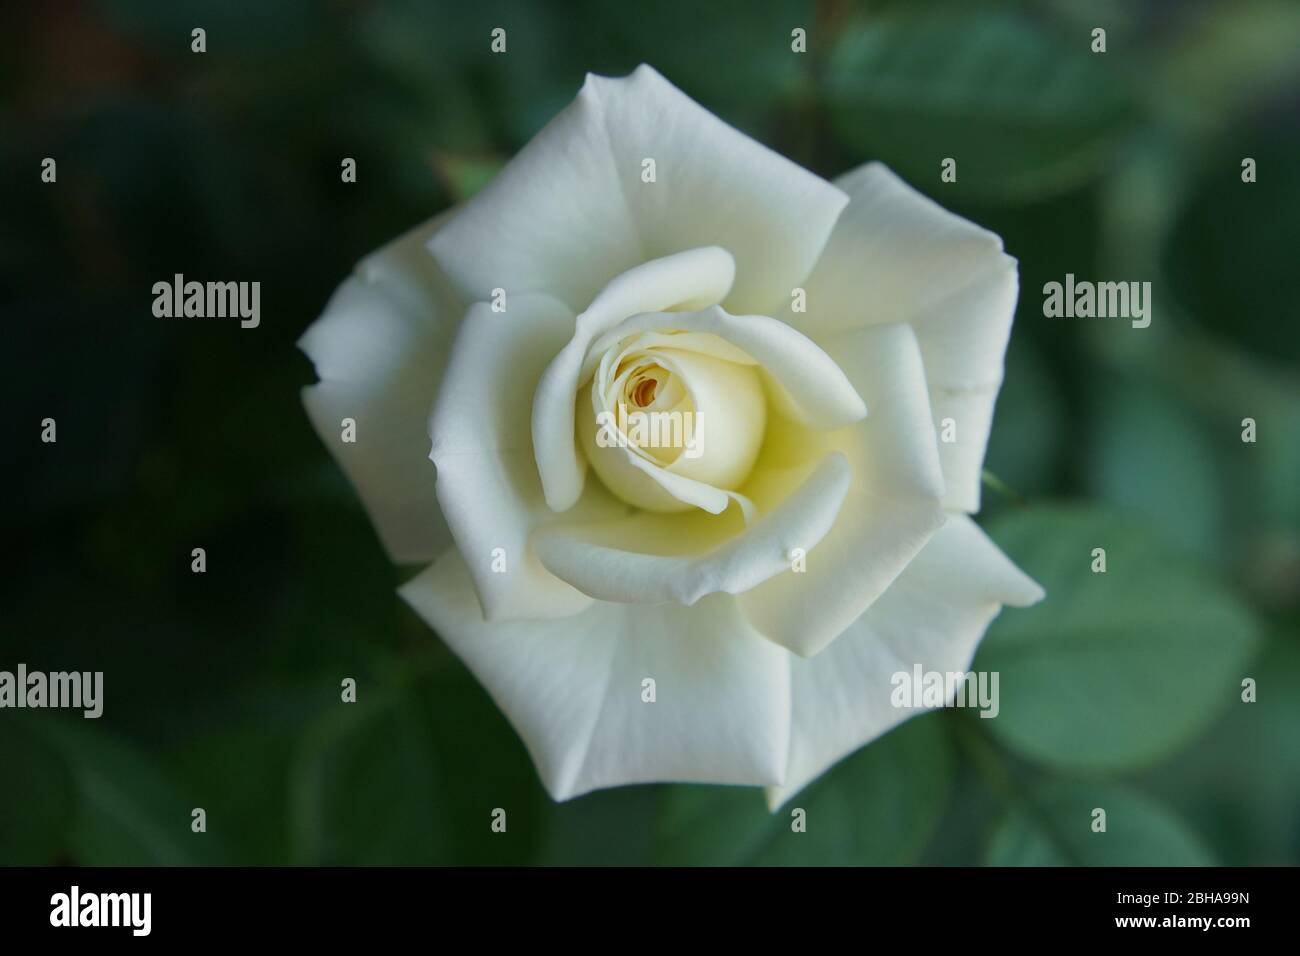 Eine weiße Rosenblüte in der Nahaufnahme. Eine schöne Aussicht auf die Blüte. Stockfoto